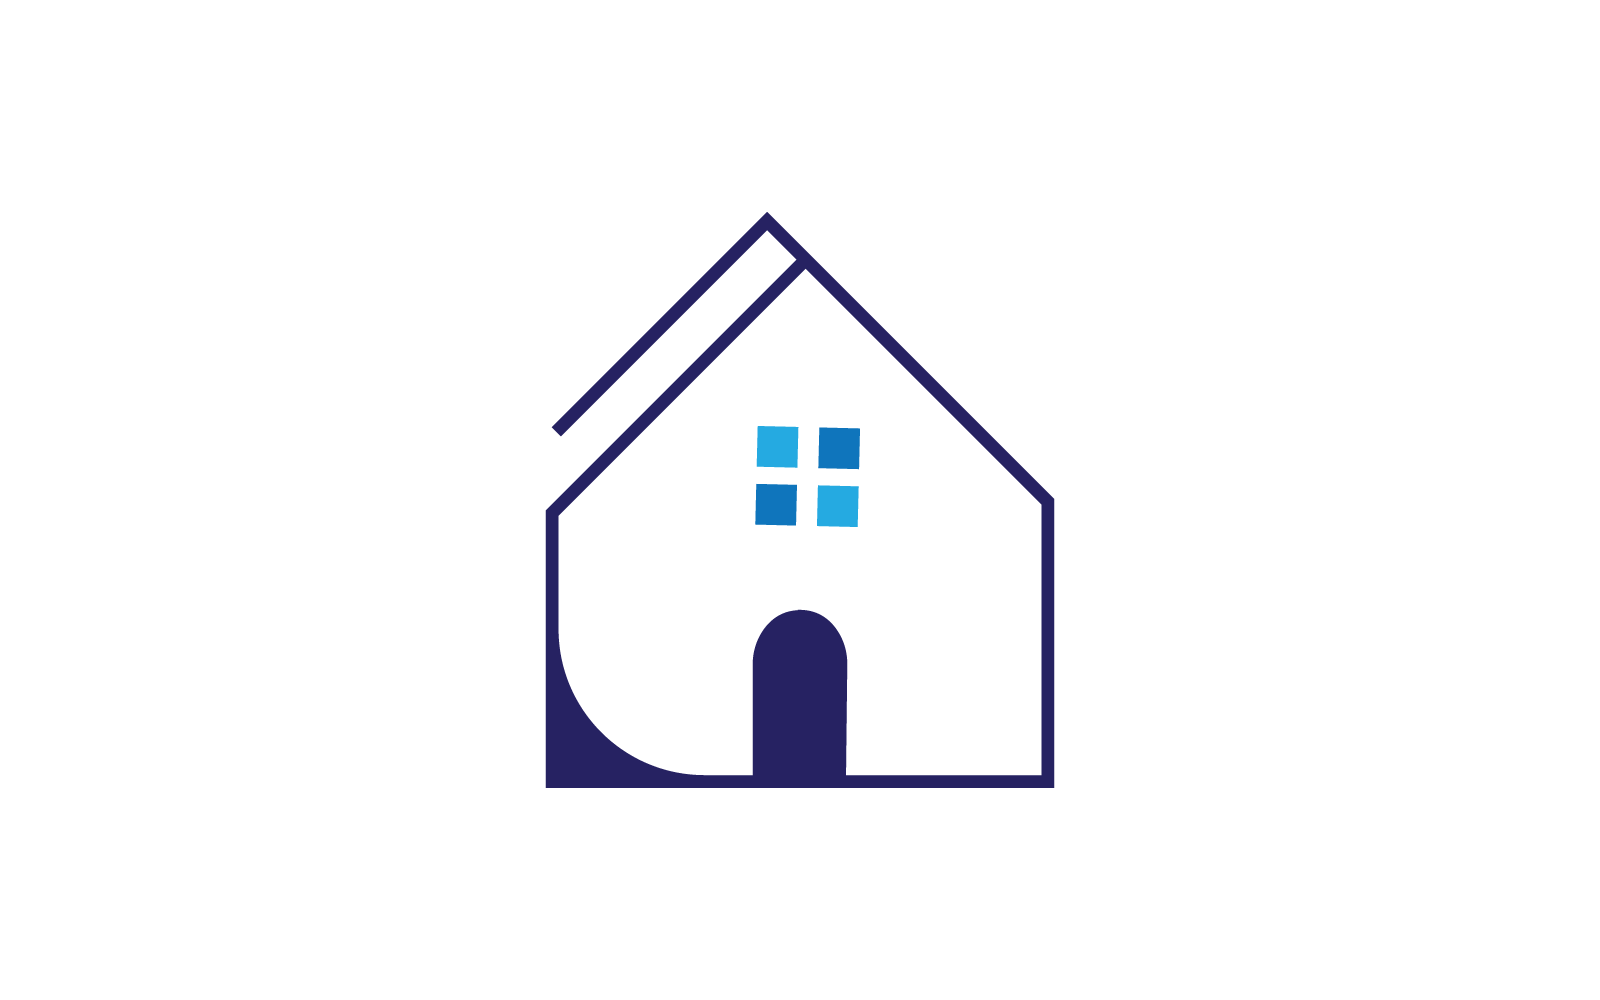 H betű ingatlan tervezés logó sablon